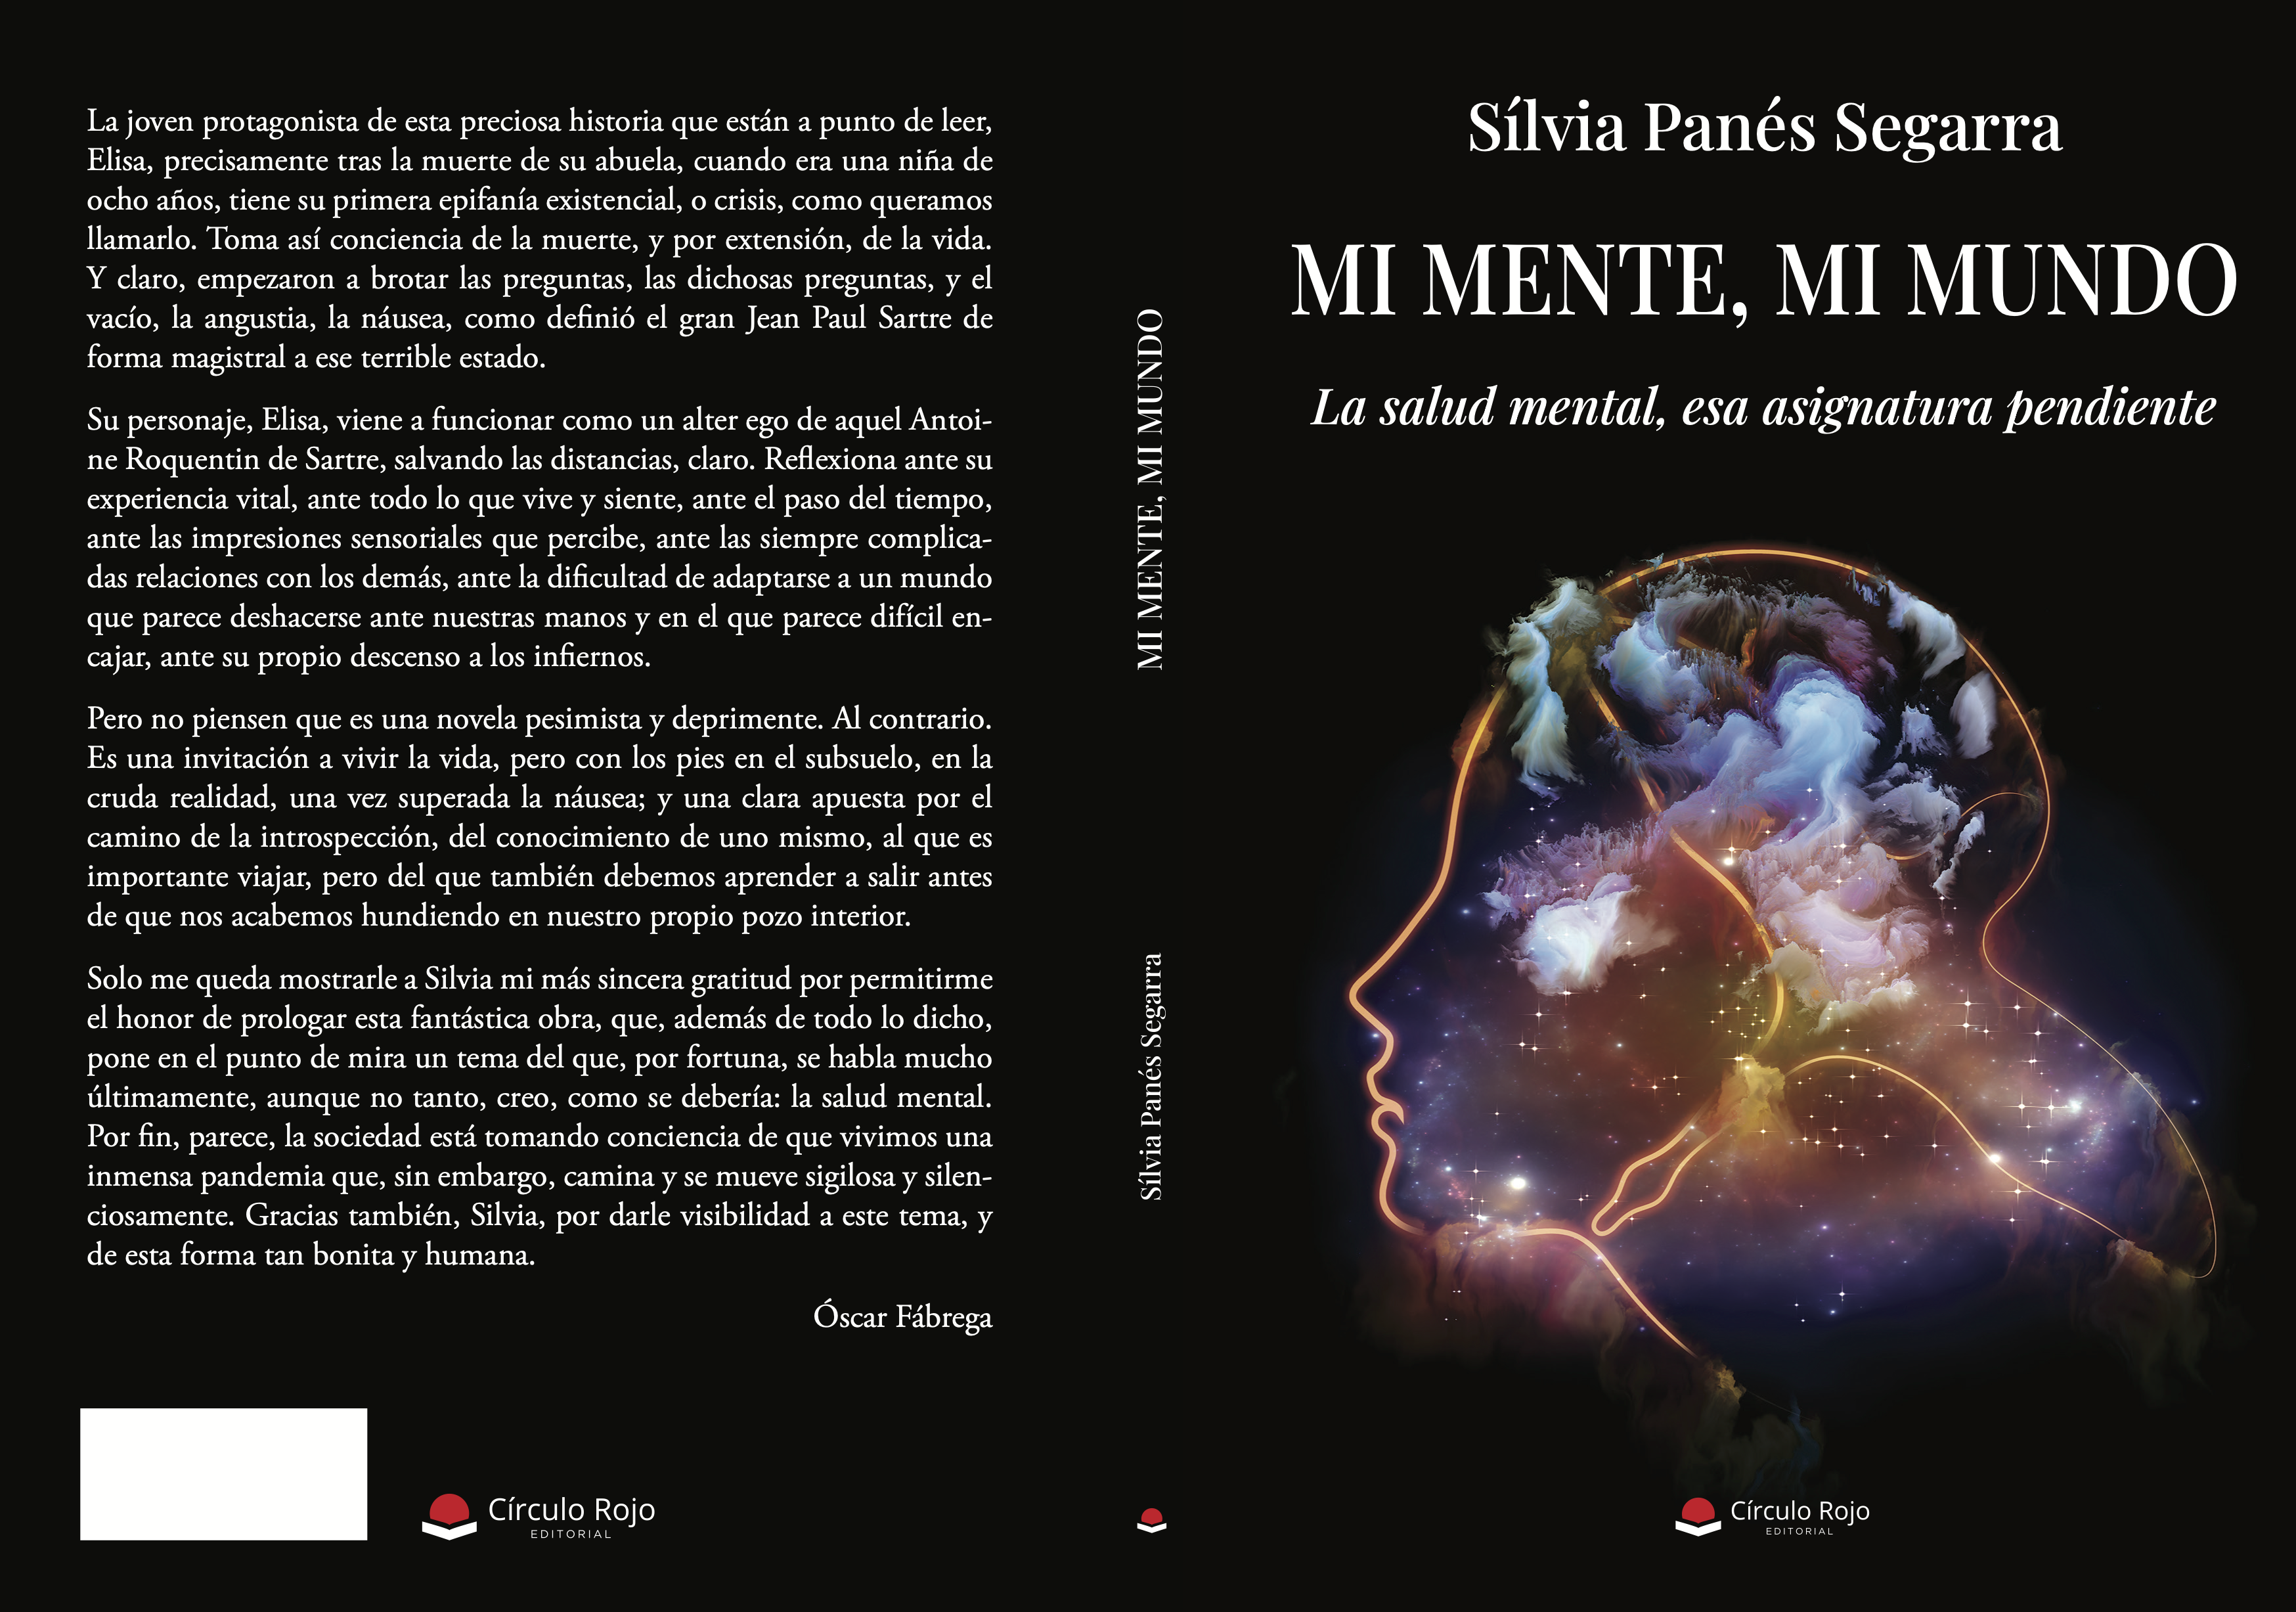 Siete razones por las que leer  “Mi MENTE, MI MUNDO”, de la escritora Sílvia Panés Segarra.